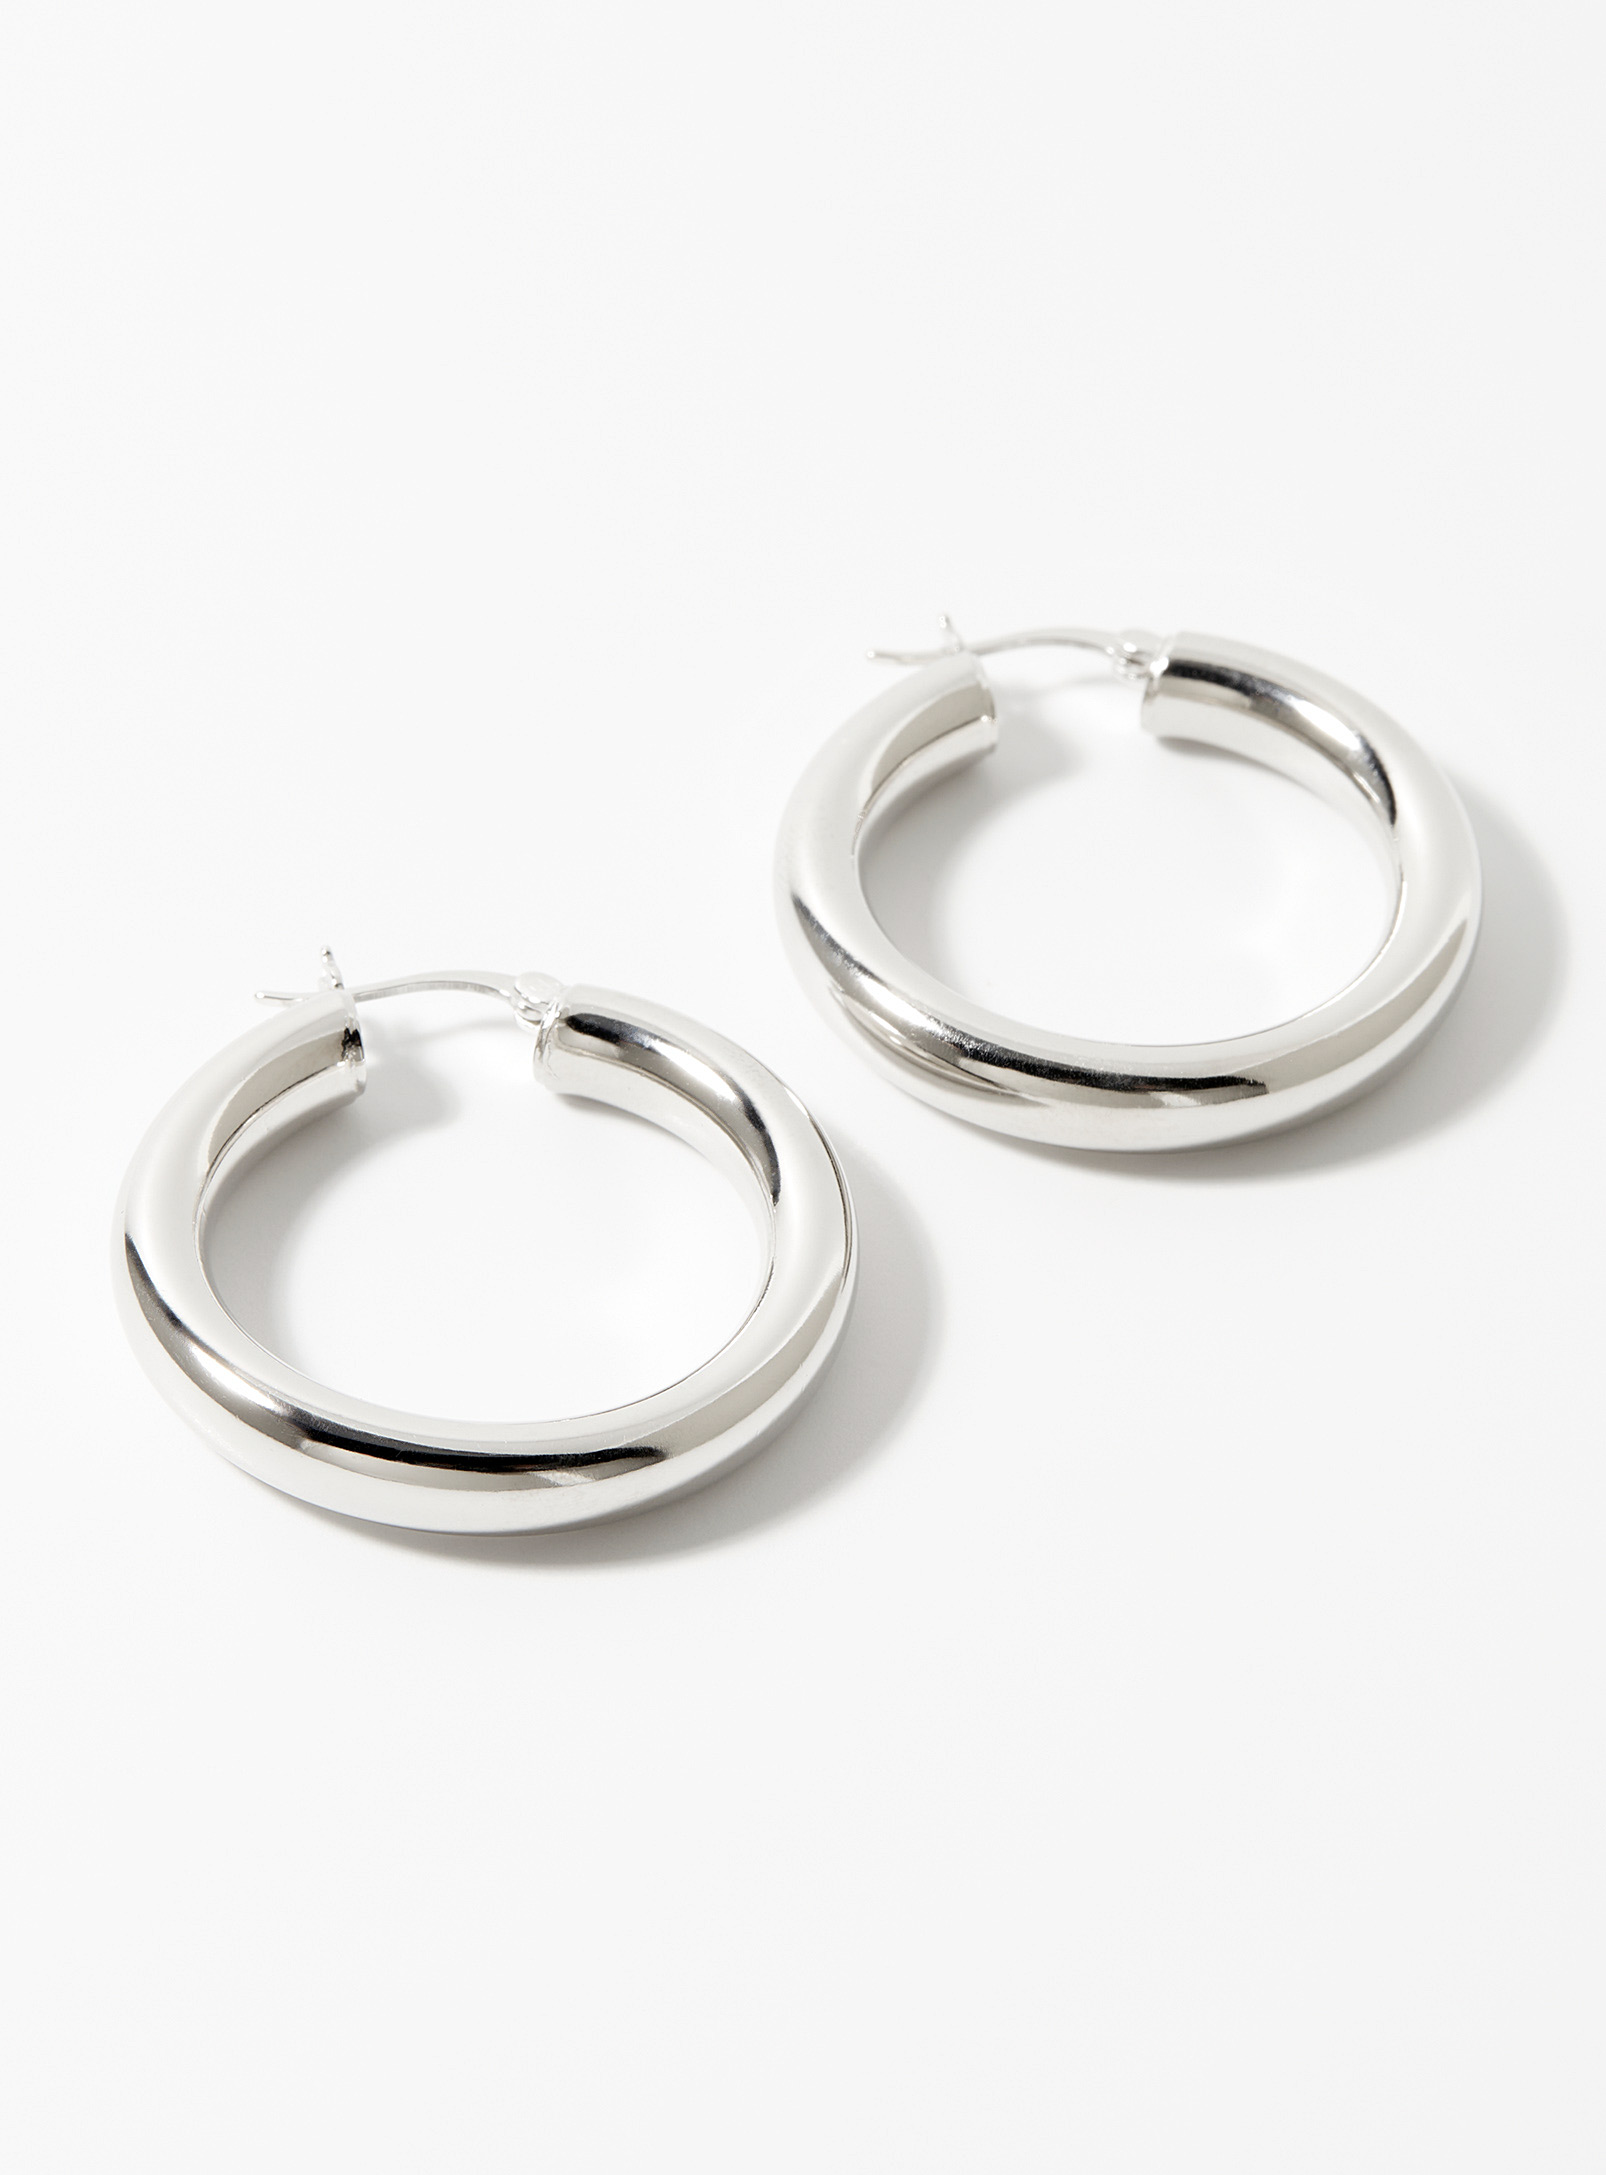 Simons - Women's Silver tube Hoop Earrings